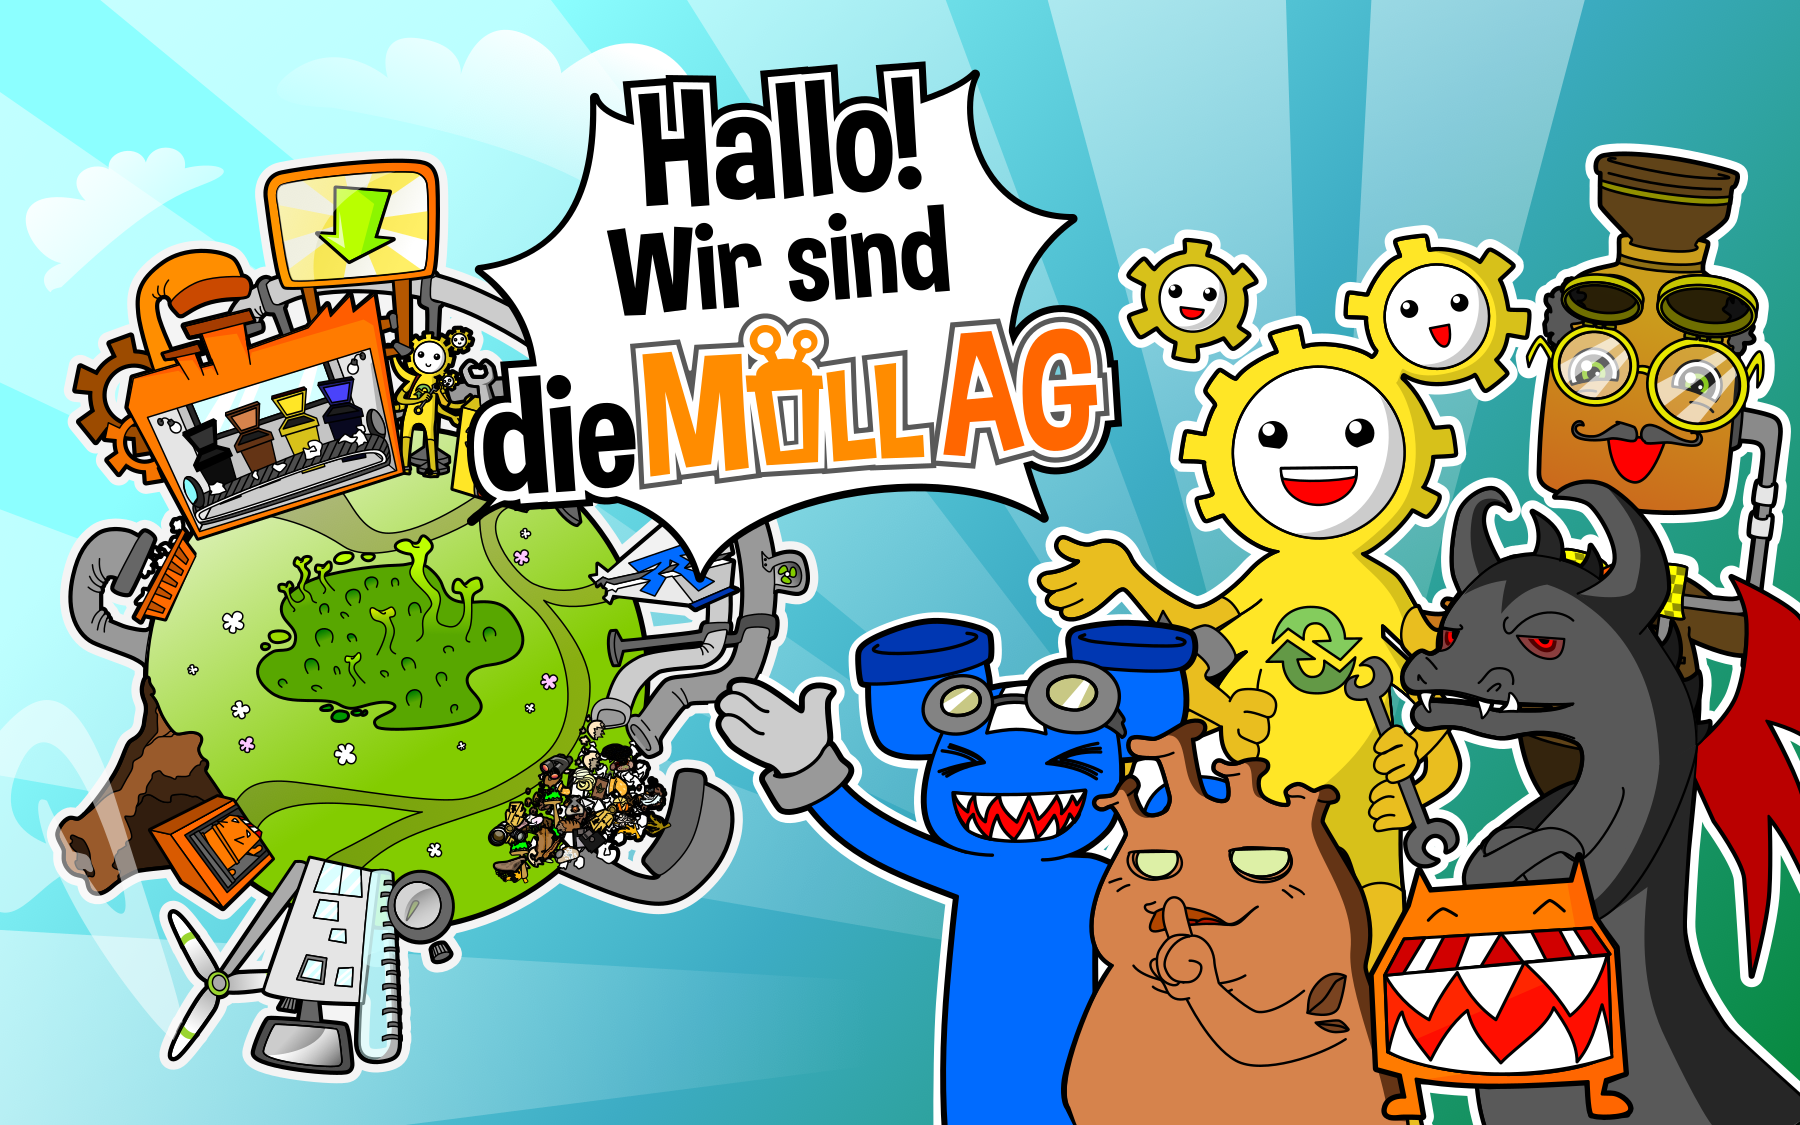 Bild vergrößern: Titelbild des Spiels "Die Müll-AG", mit der Aufschrift "Hallo! Wir sind die Müll AG"